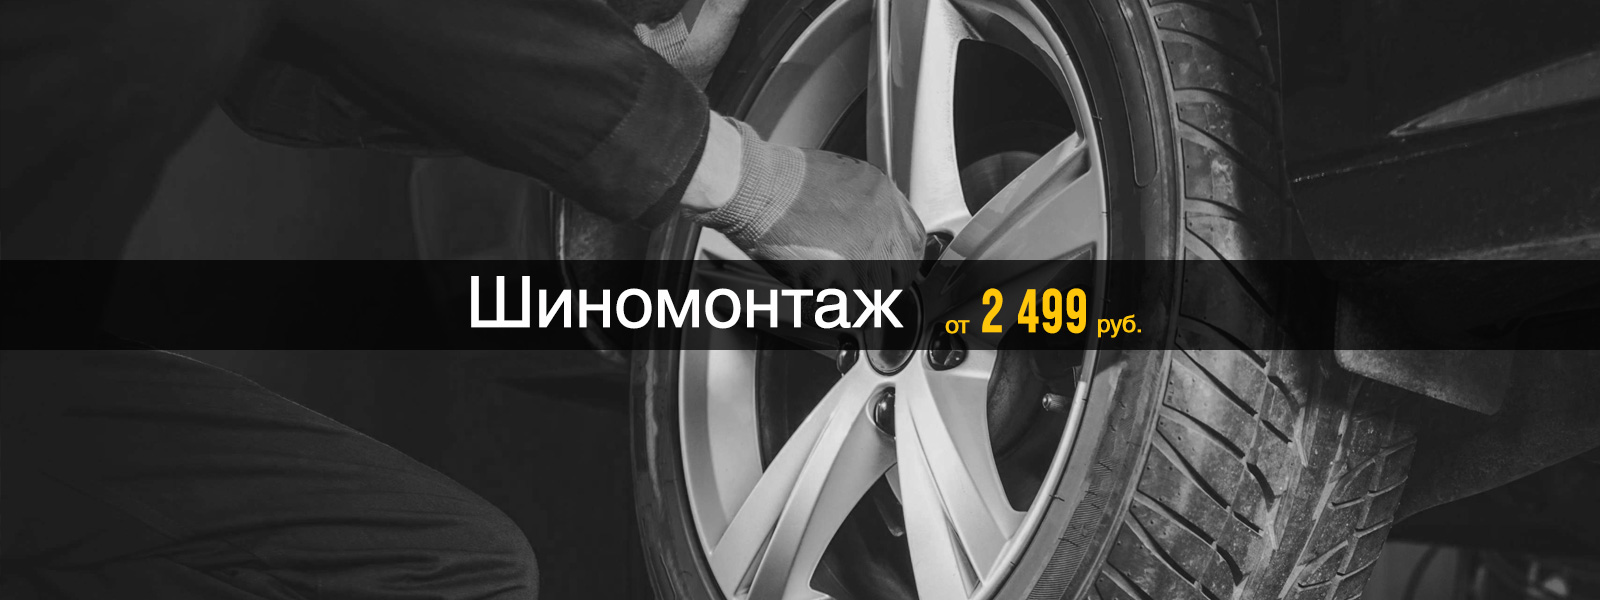 Шиномонтаж от 2 499 рублей